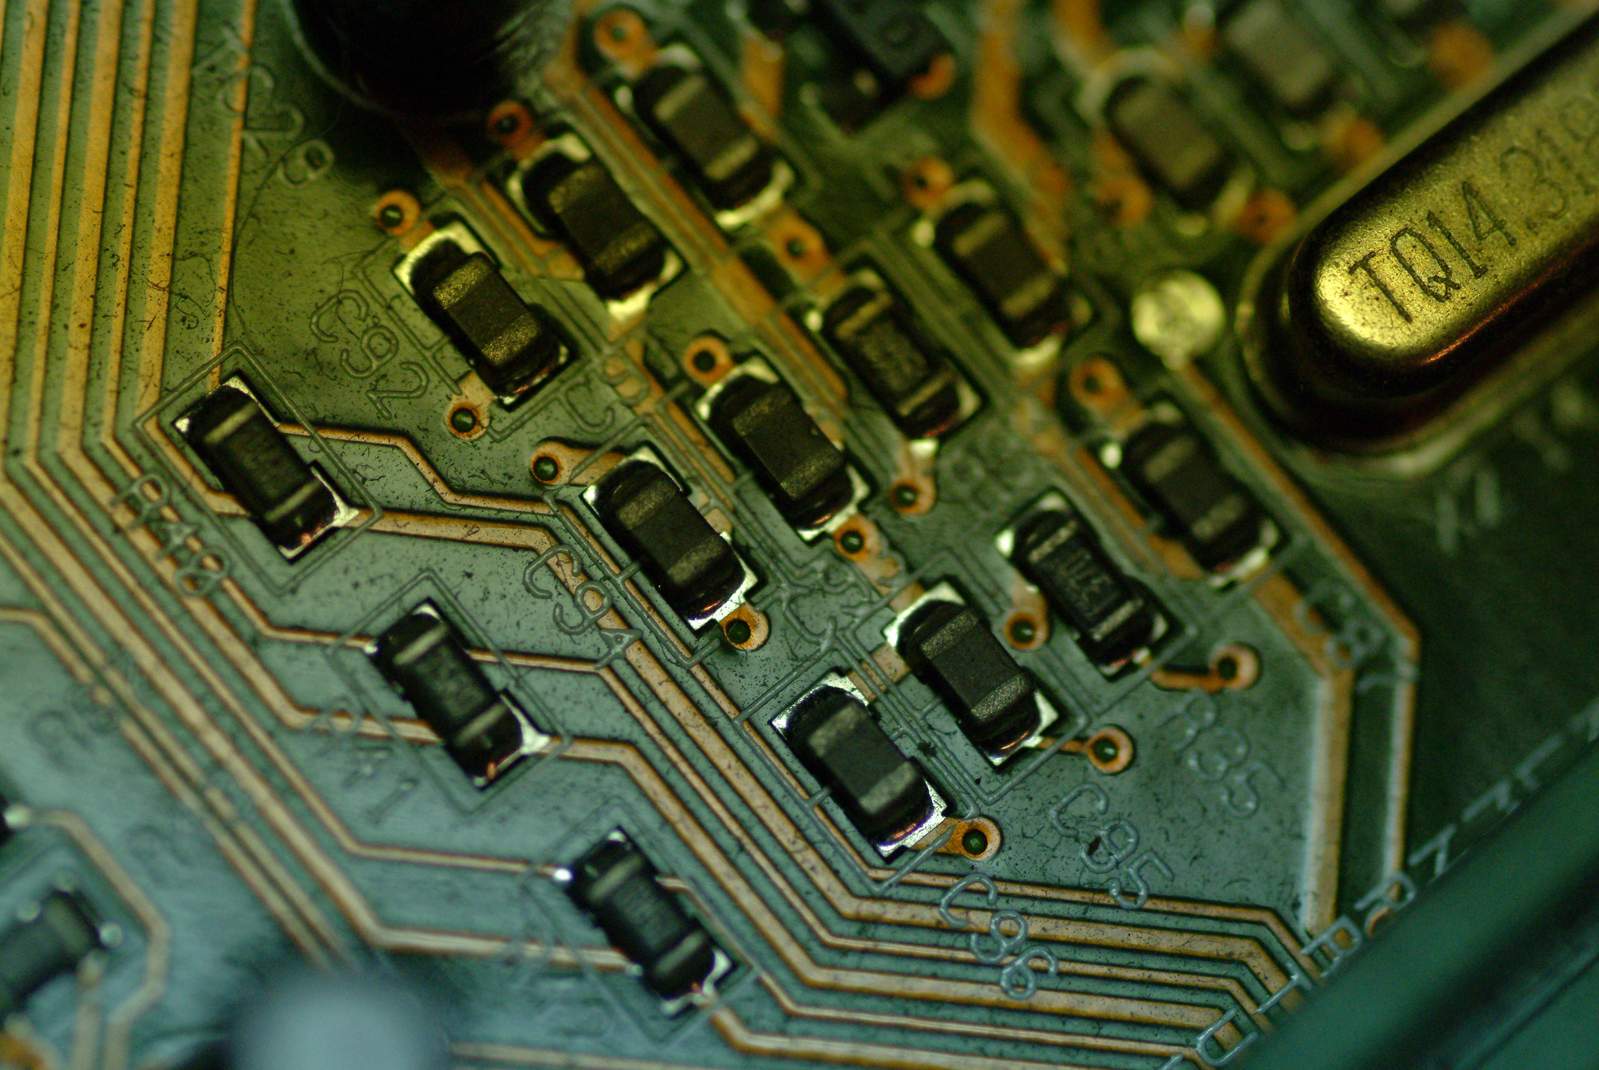 a micro processor board is shown close up